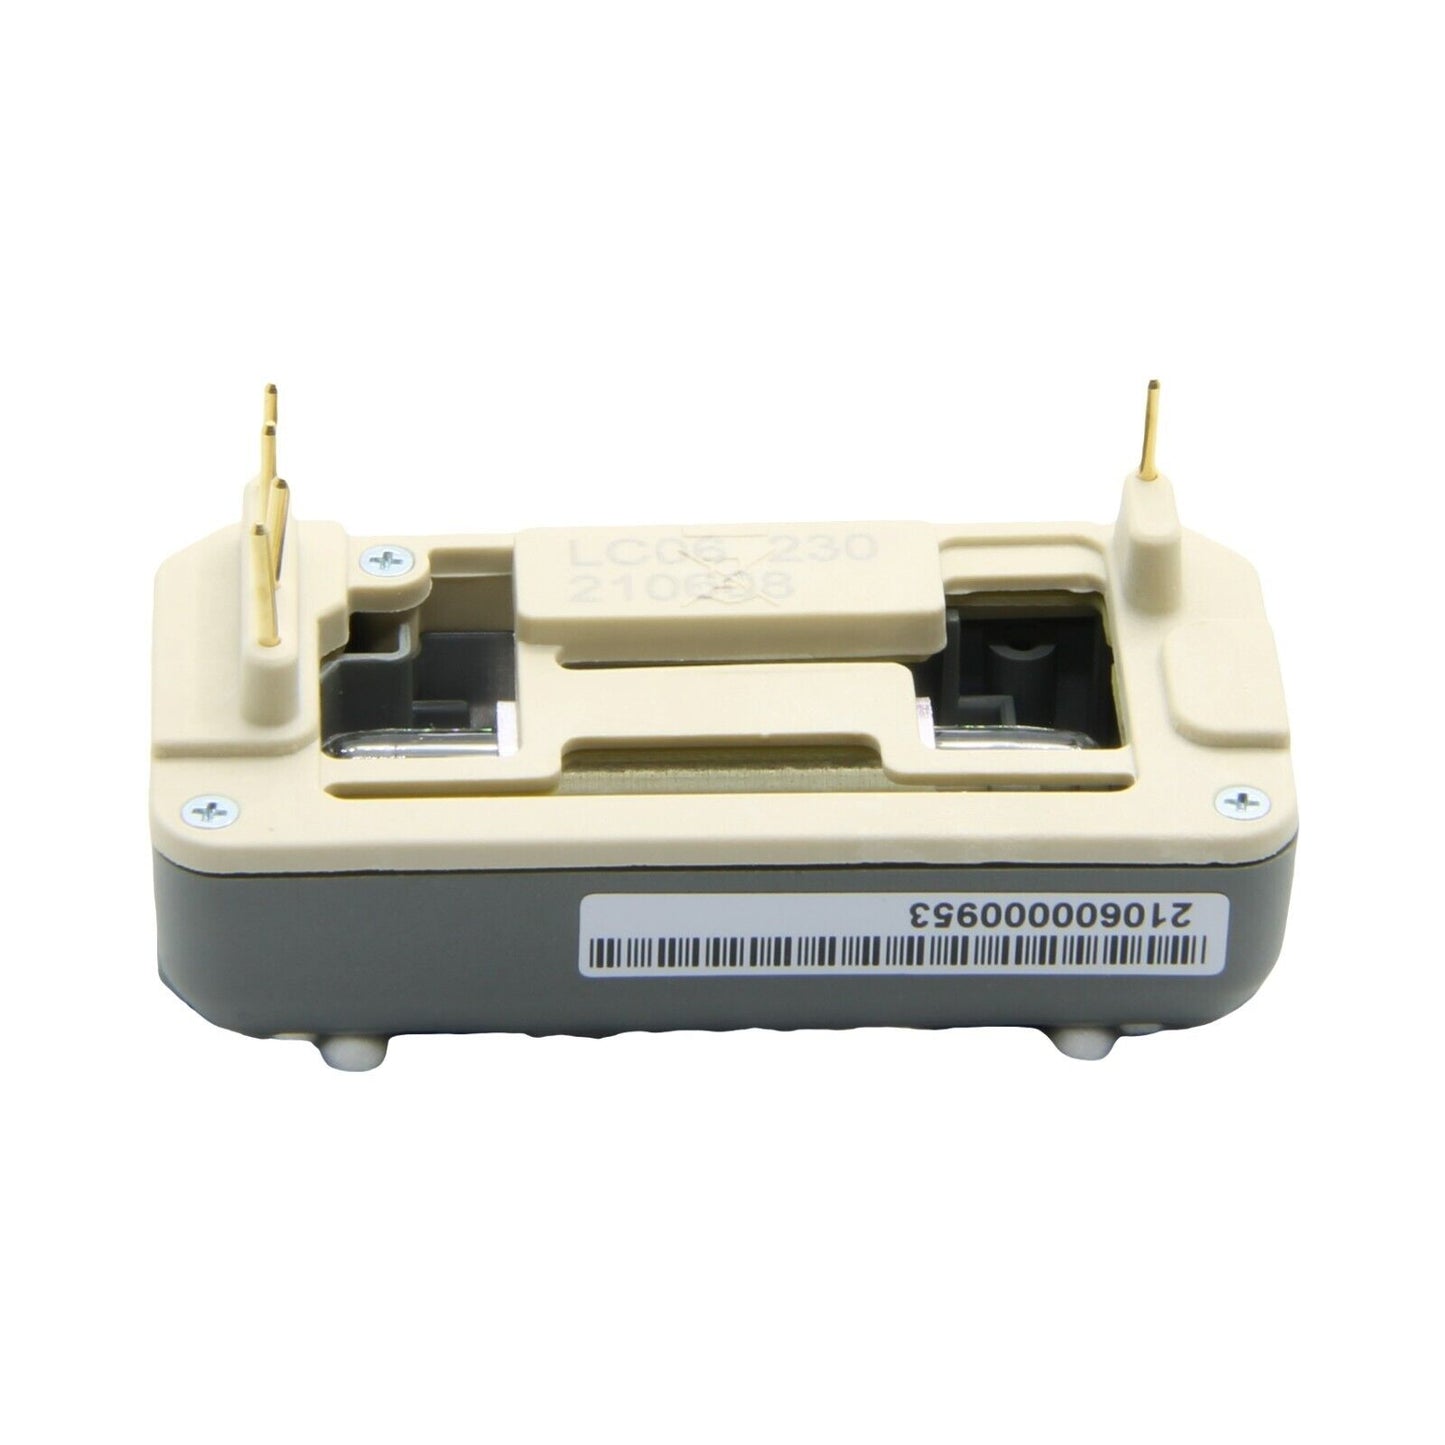 Remington lampada epilatore luce pulsata iLight IPL6250 IPL6500 IPL6750 IPL6780